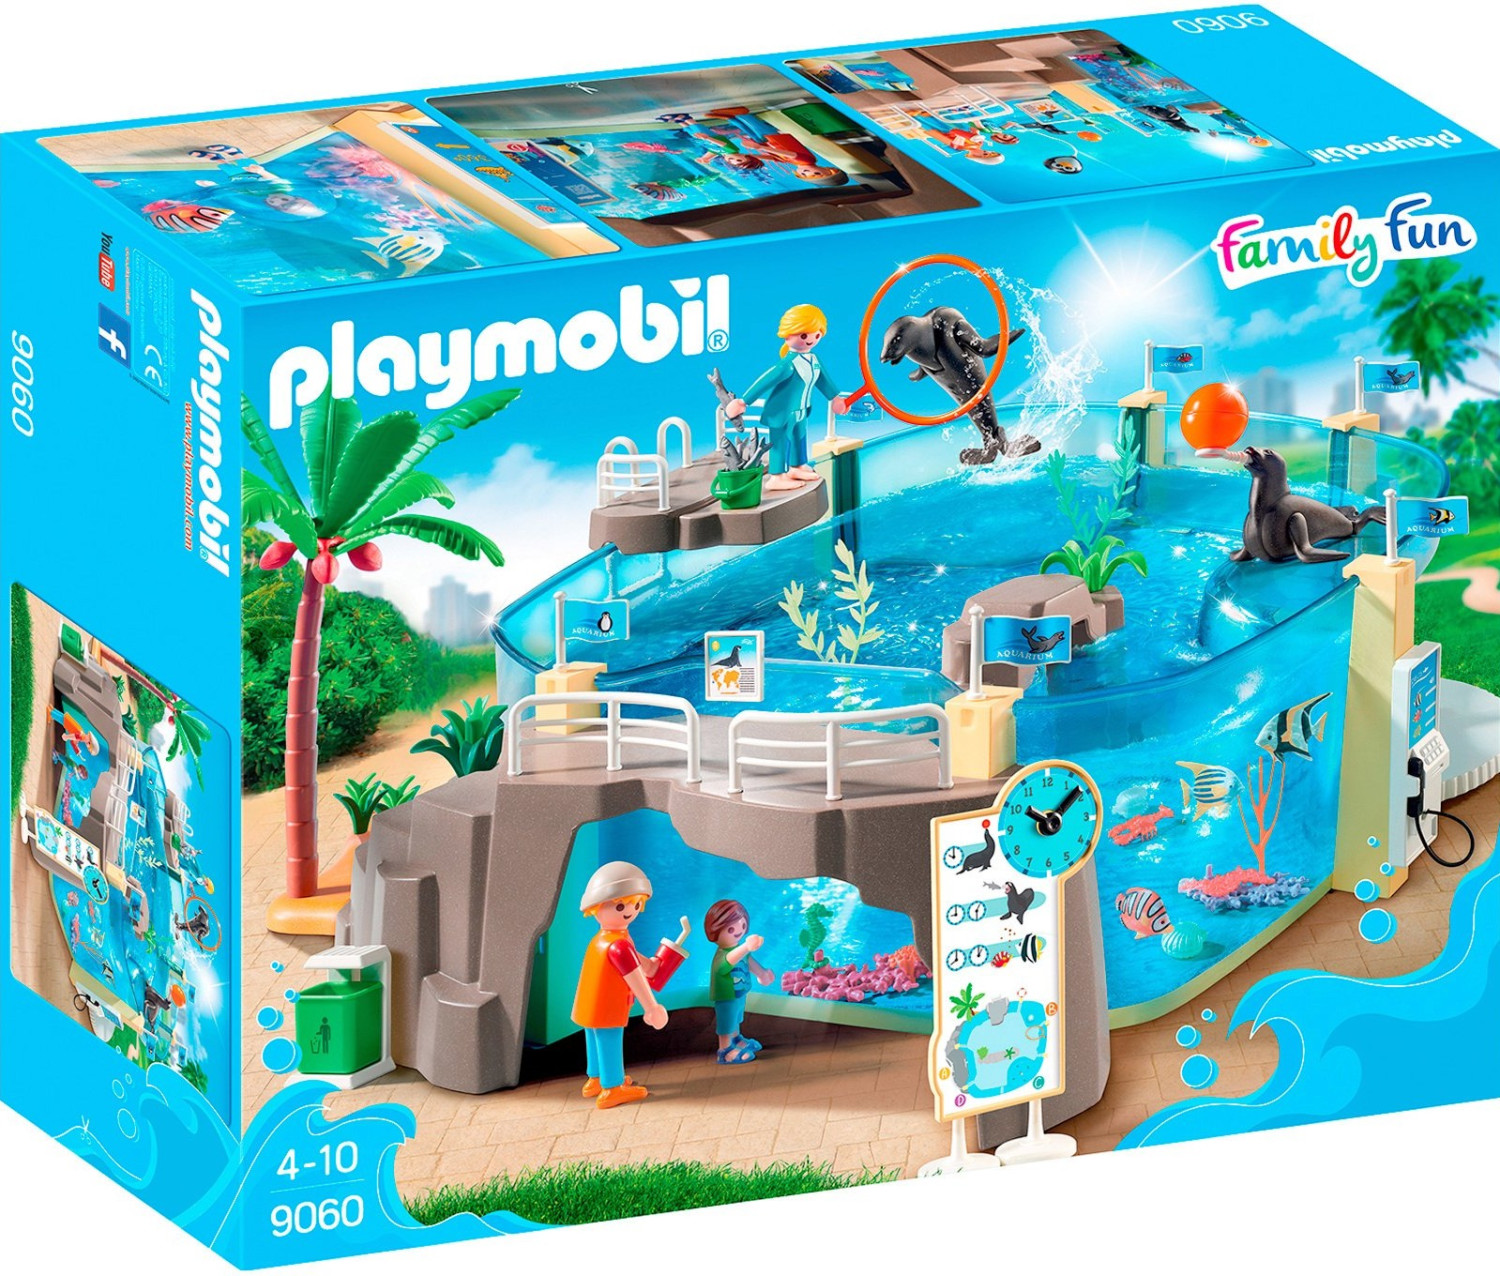 Photos - Toy Car Playmobil Family Fun - Aquarium  (9060)